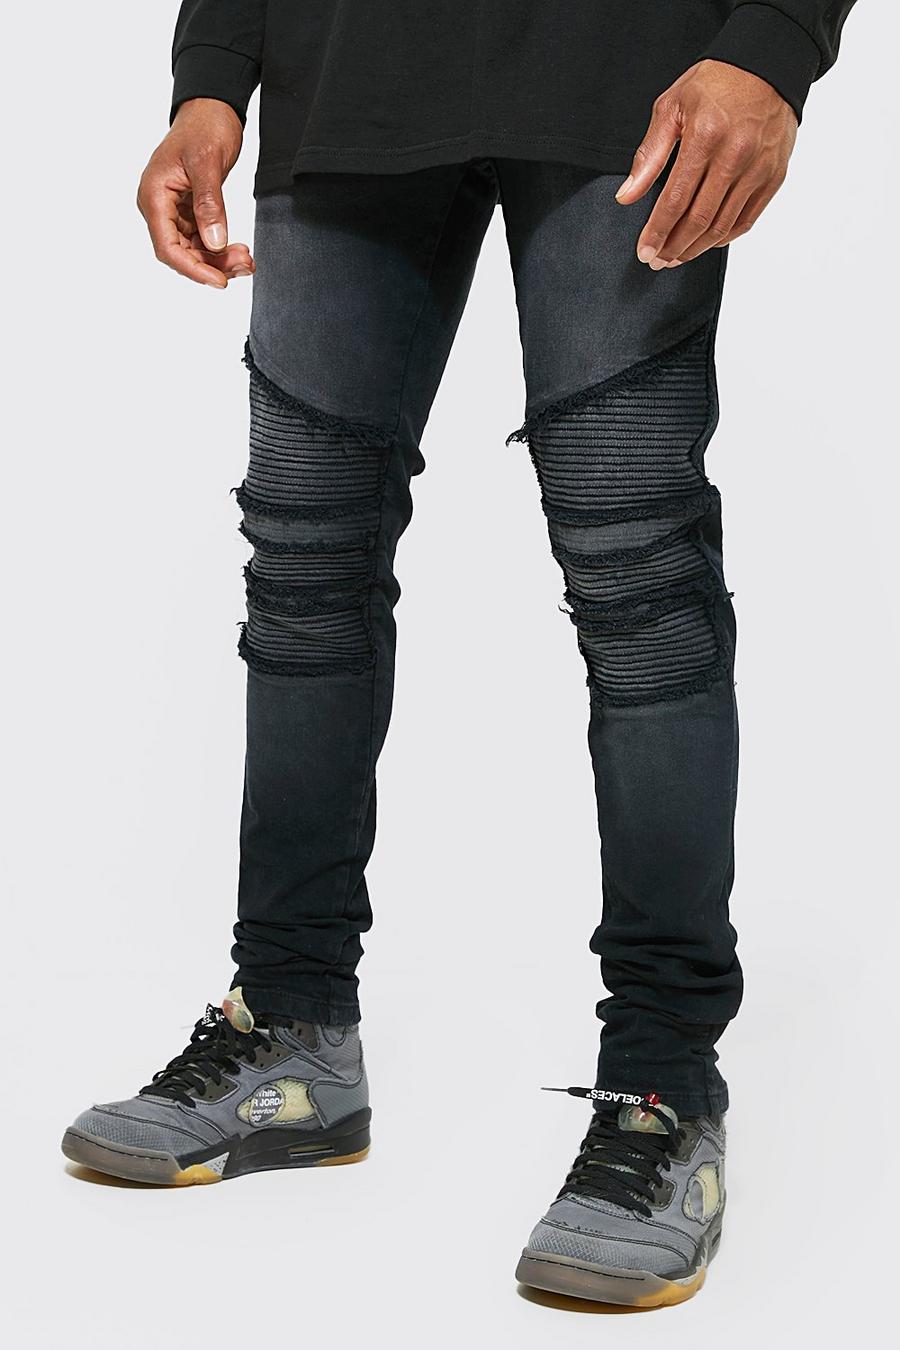 שחור דהוי סקיני ג'ינס אופנוענים עם קרעים ושוליים נערמים ועם רוכסן